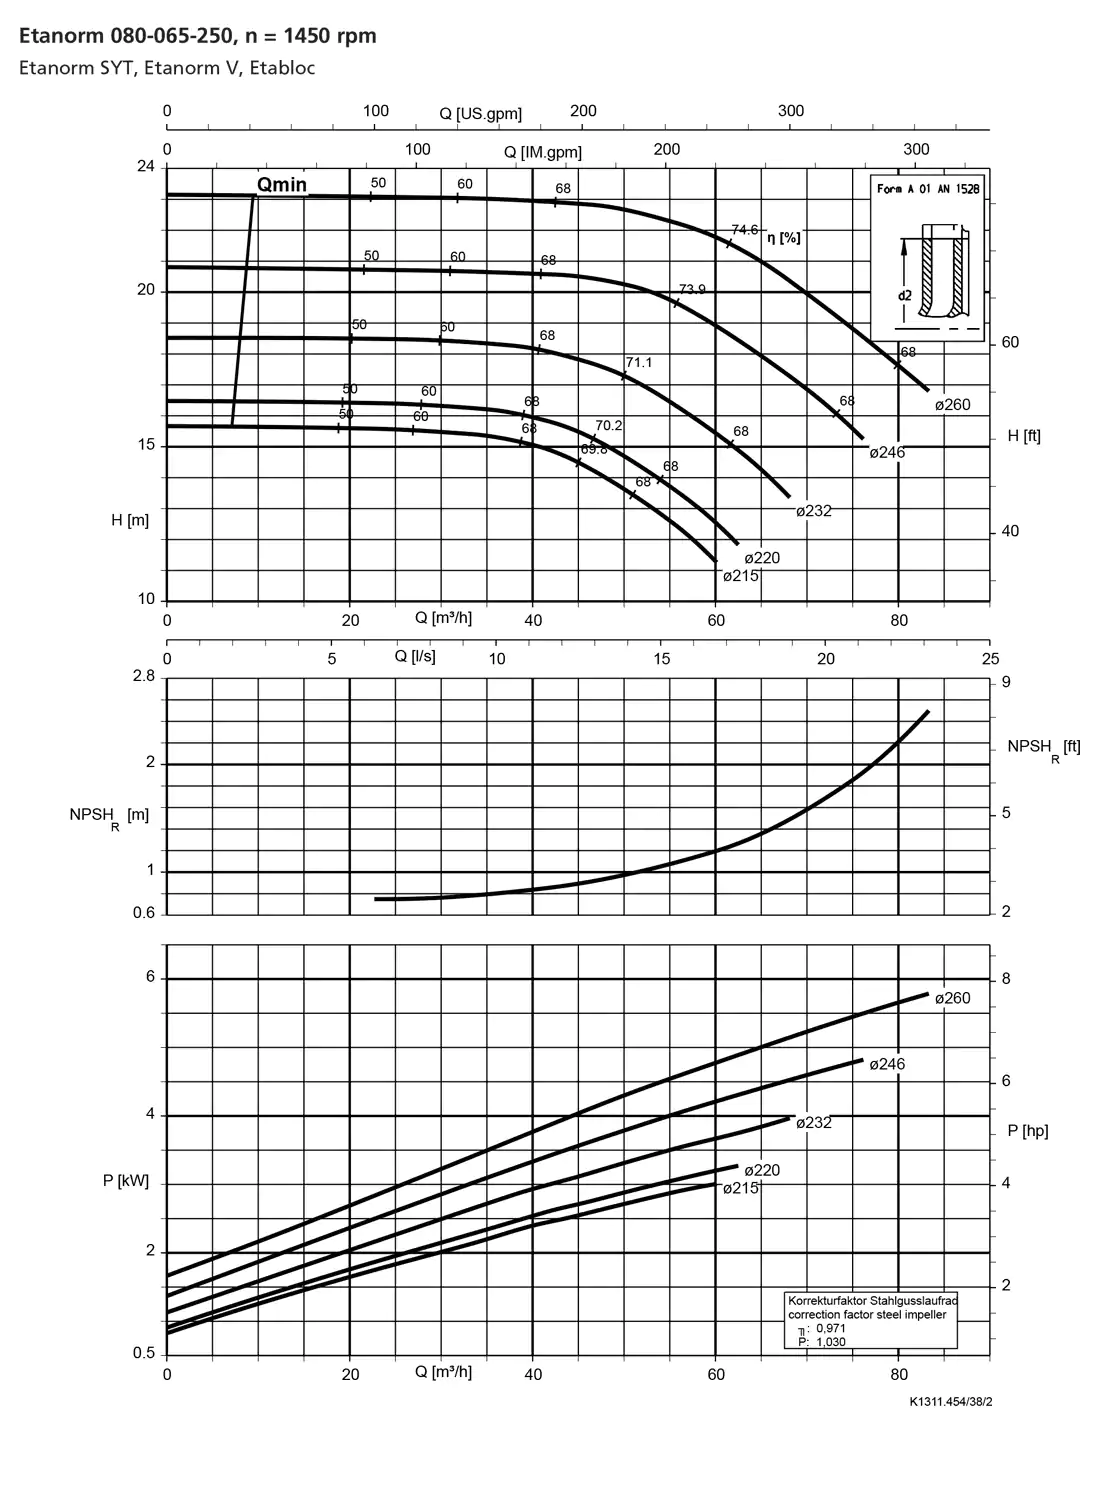 نمودار-کارکرد-پمپ-etanorm-80-065-250-1450